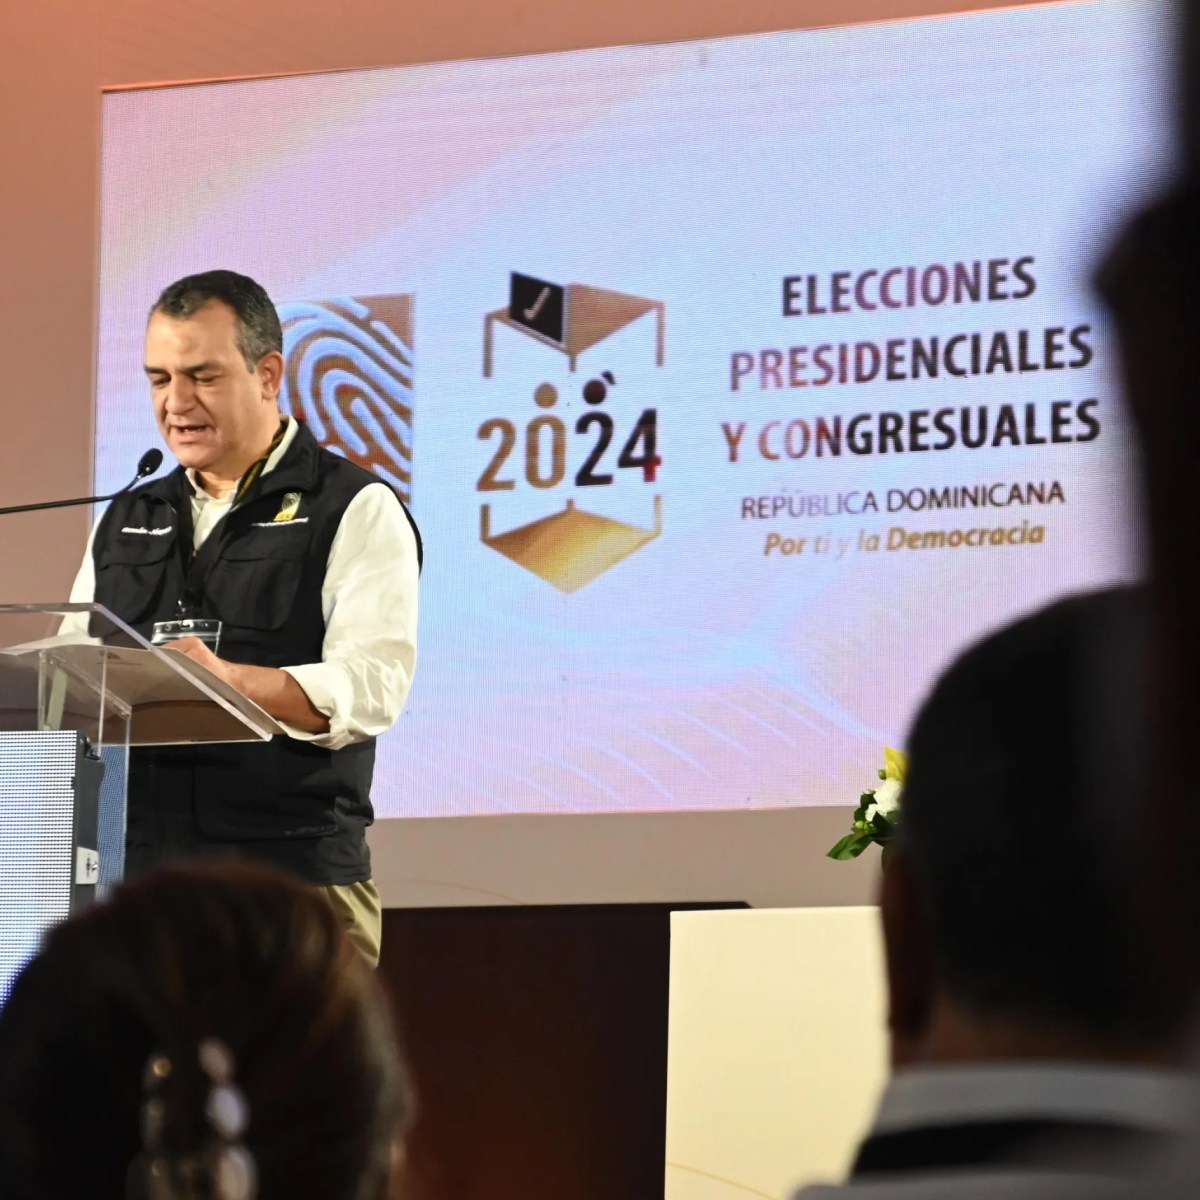 Presidente de JCE afirma elecciones han sido íntegras, transparentes y abiertas al mundo –  (República Dominicana)